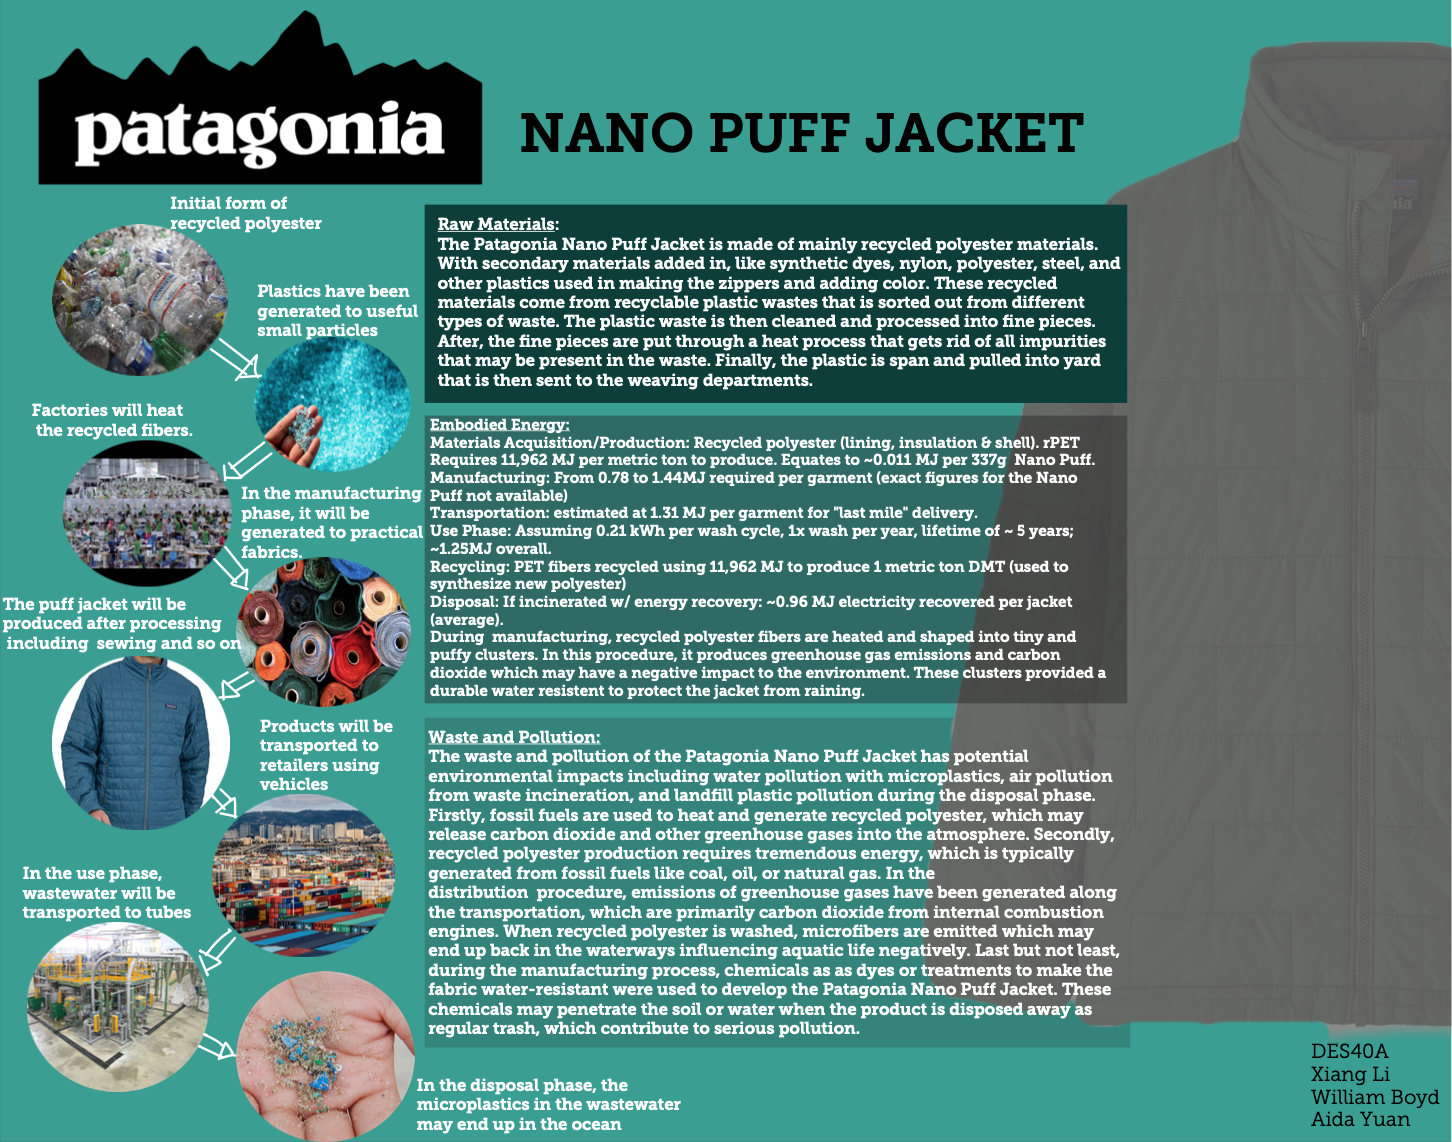 Patagonia Nano Puff Jacket — Design Life-Cycle